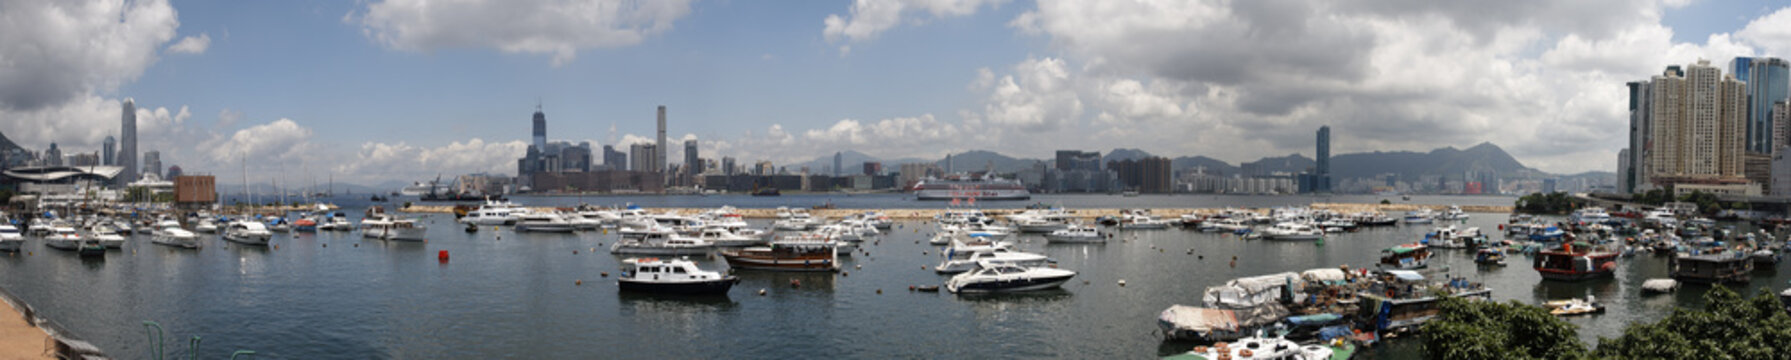 Panorama of Causeway Bay Harbor in Hong Kong